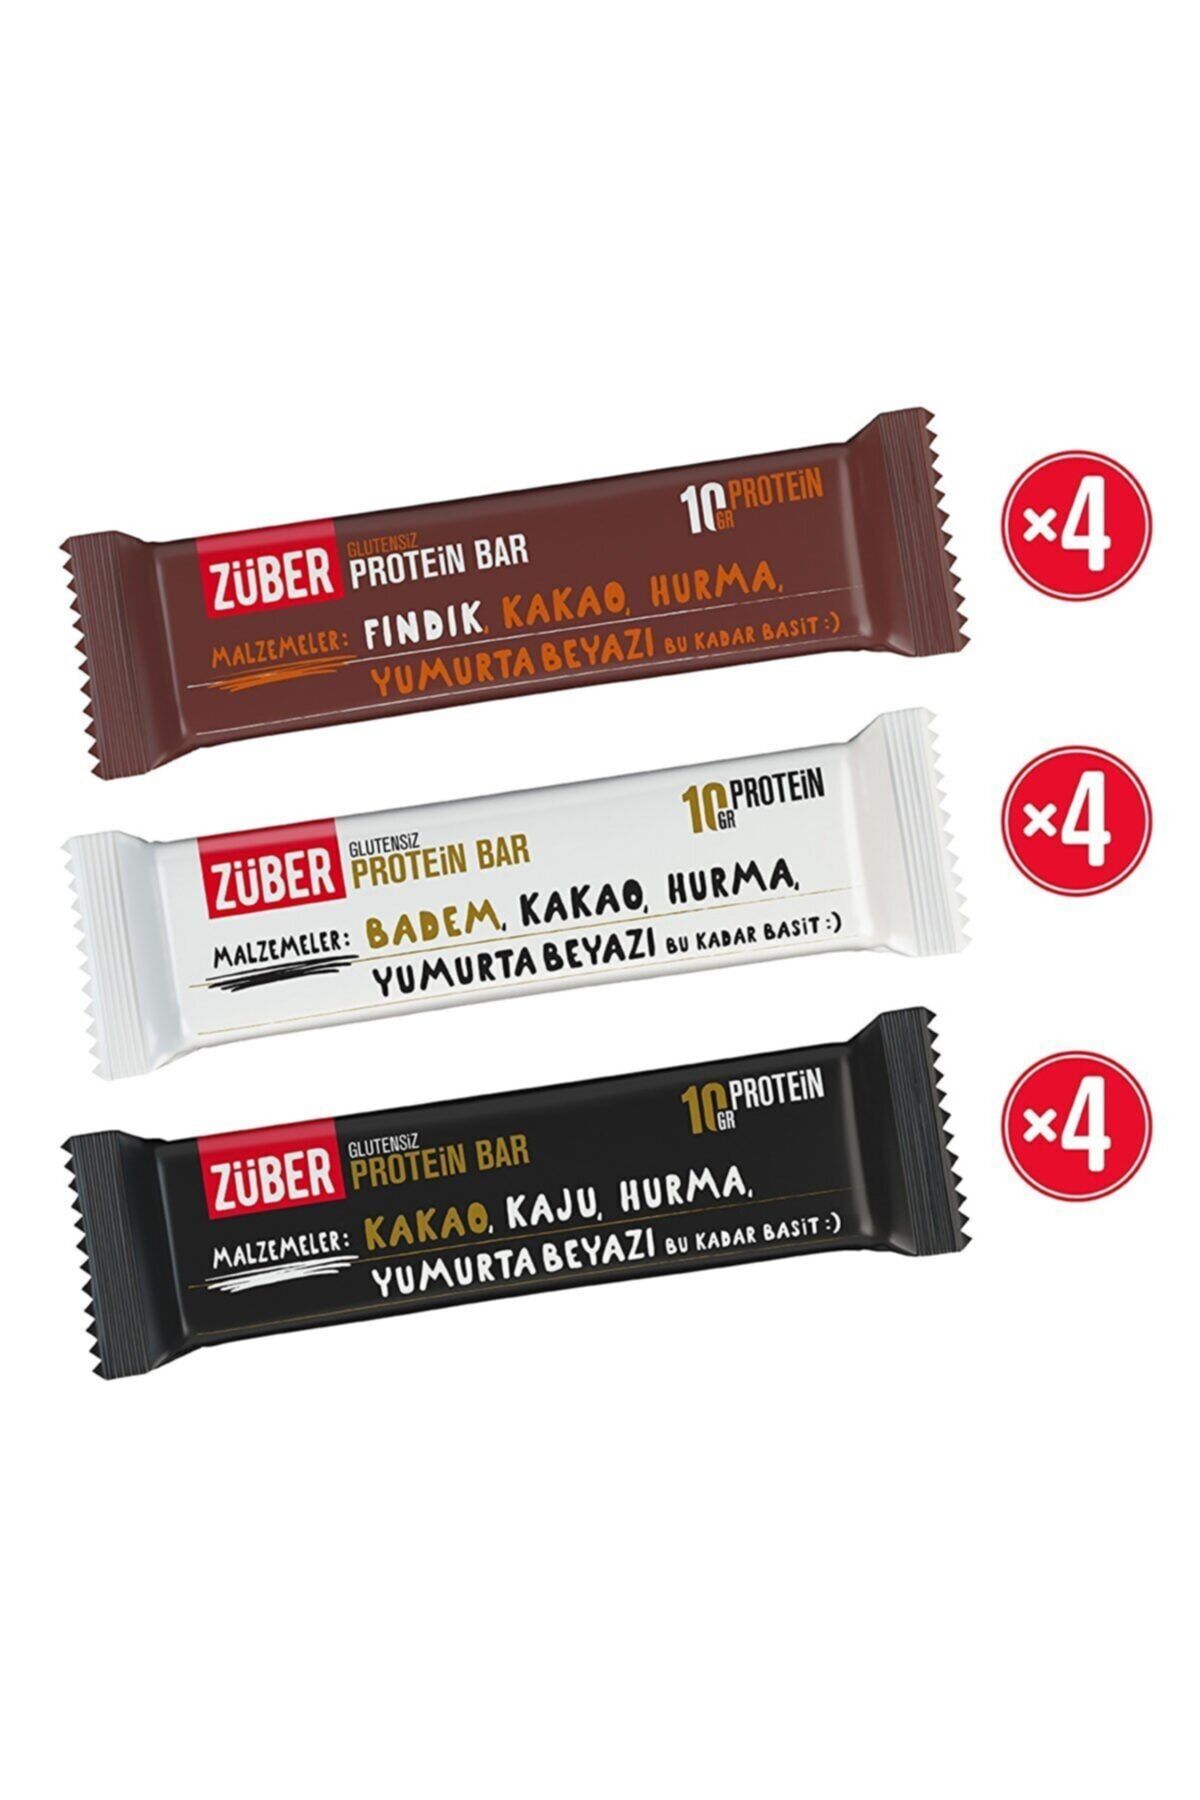 Züber Protein Bar Karışık Deneme Paketi Fındıklı - Bademli - Kakaolu Glutensiz Avantaj Paket